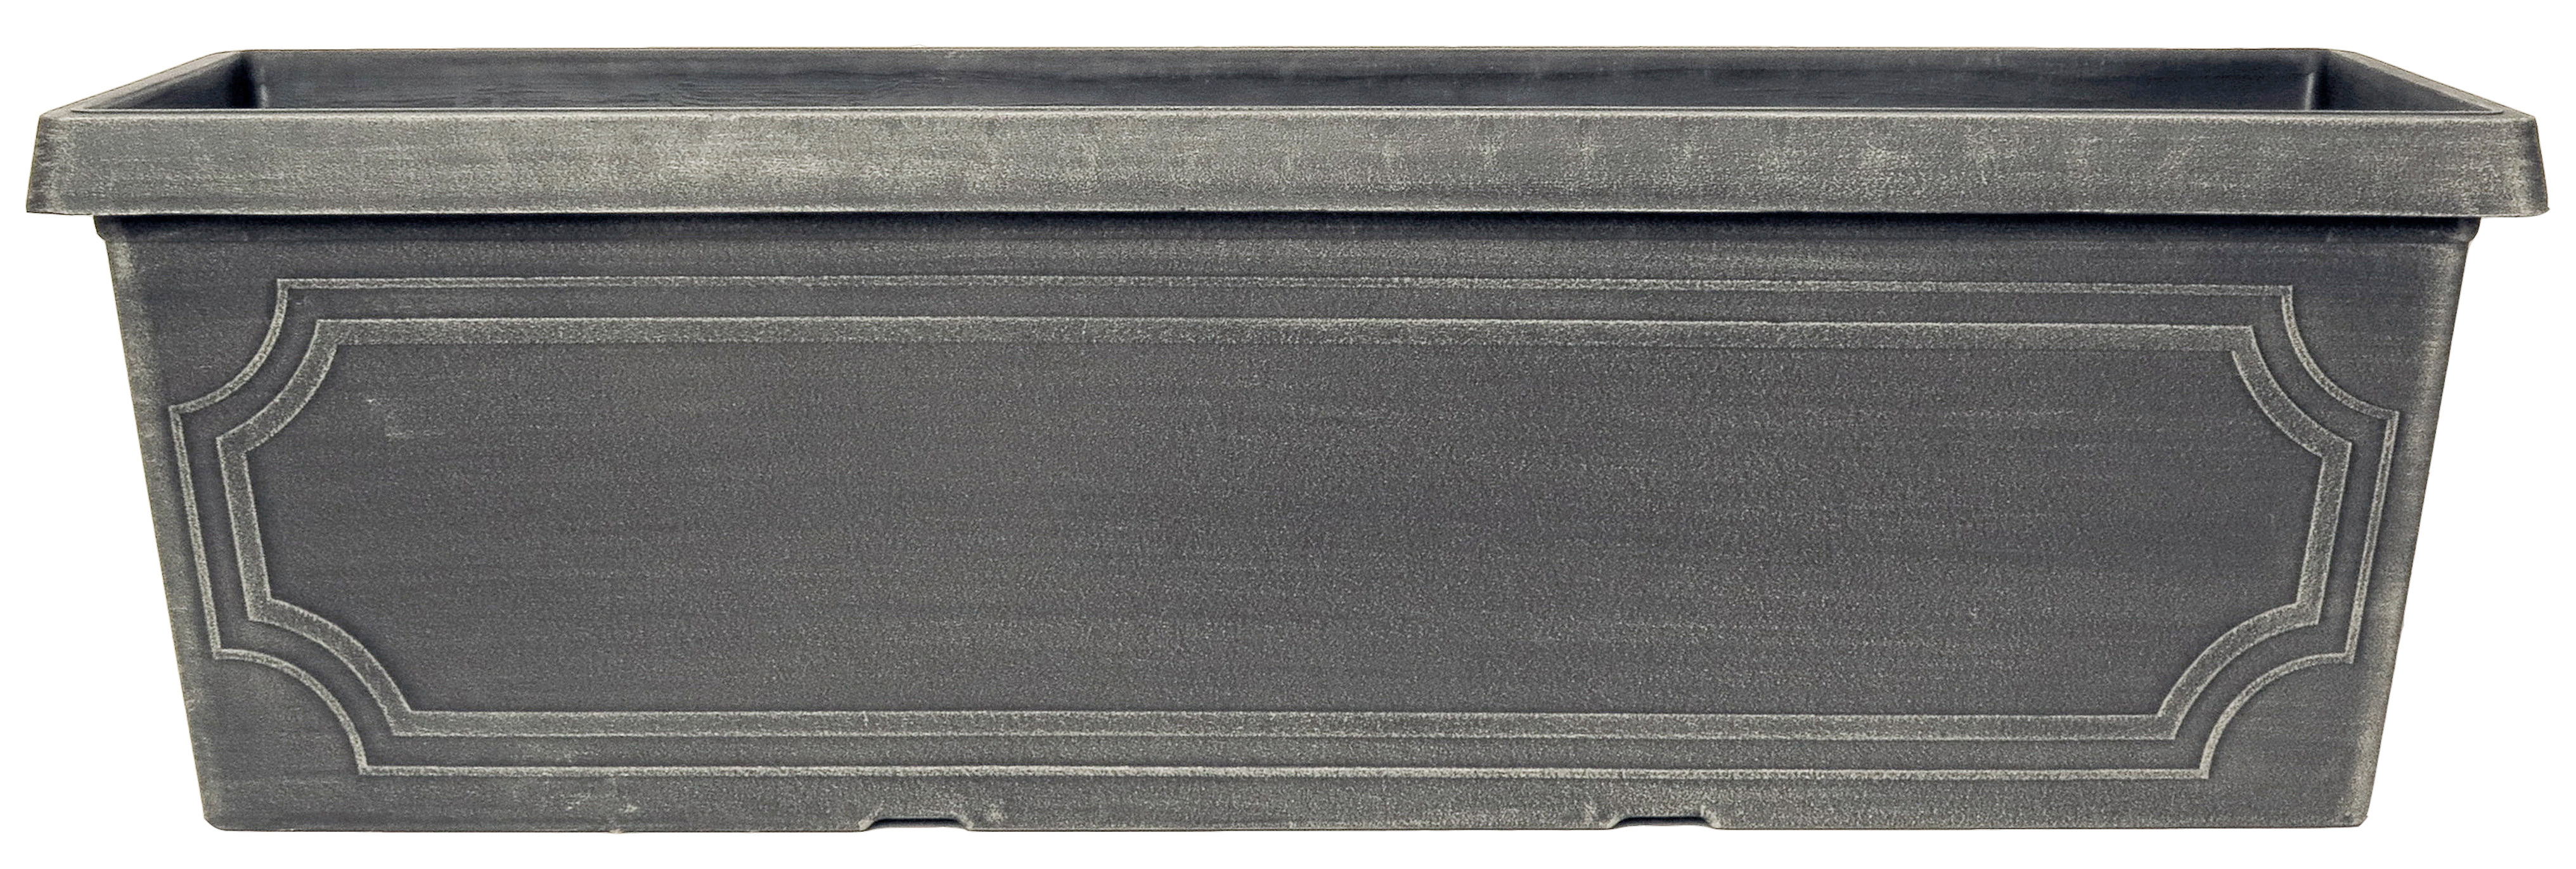 30 Estate Window Box Chalk - 24 per case